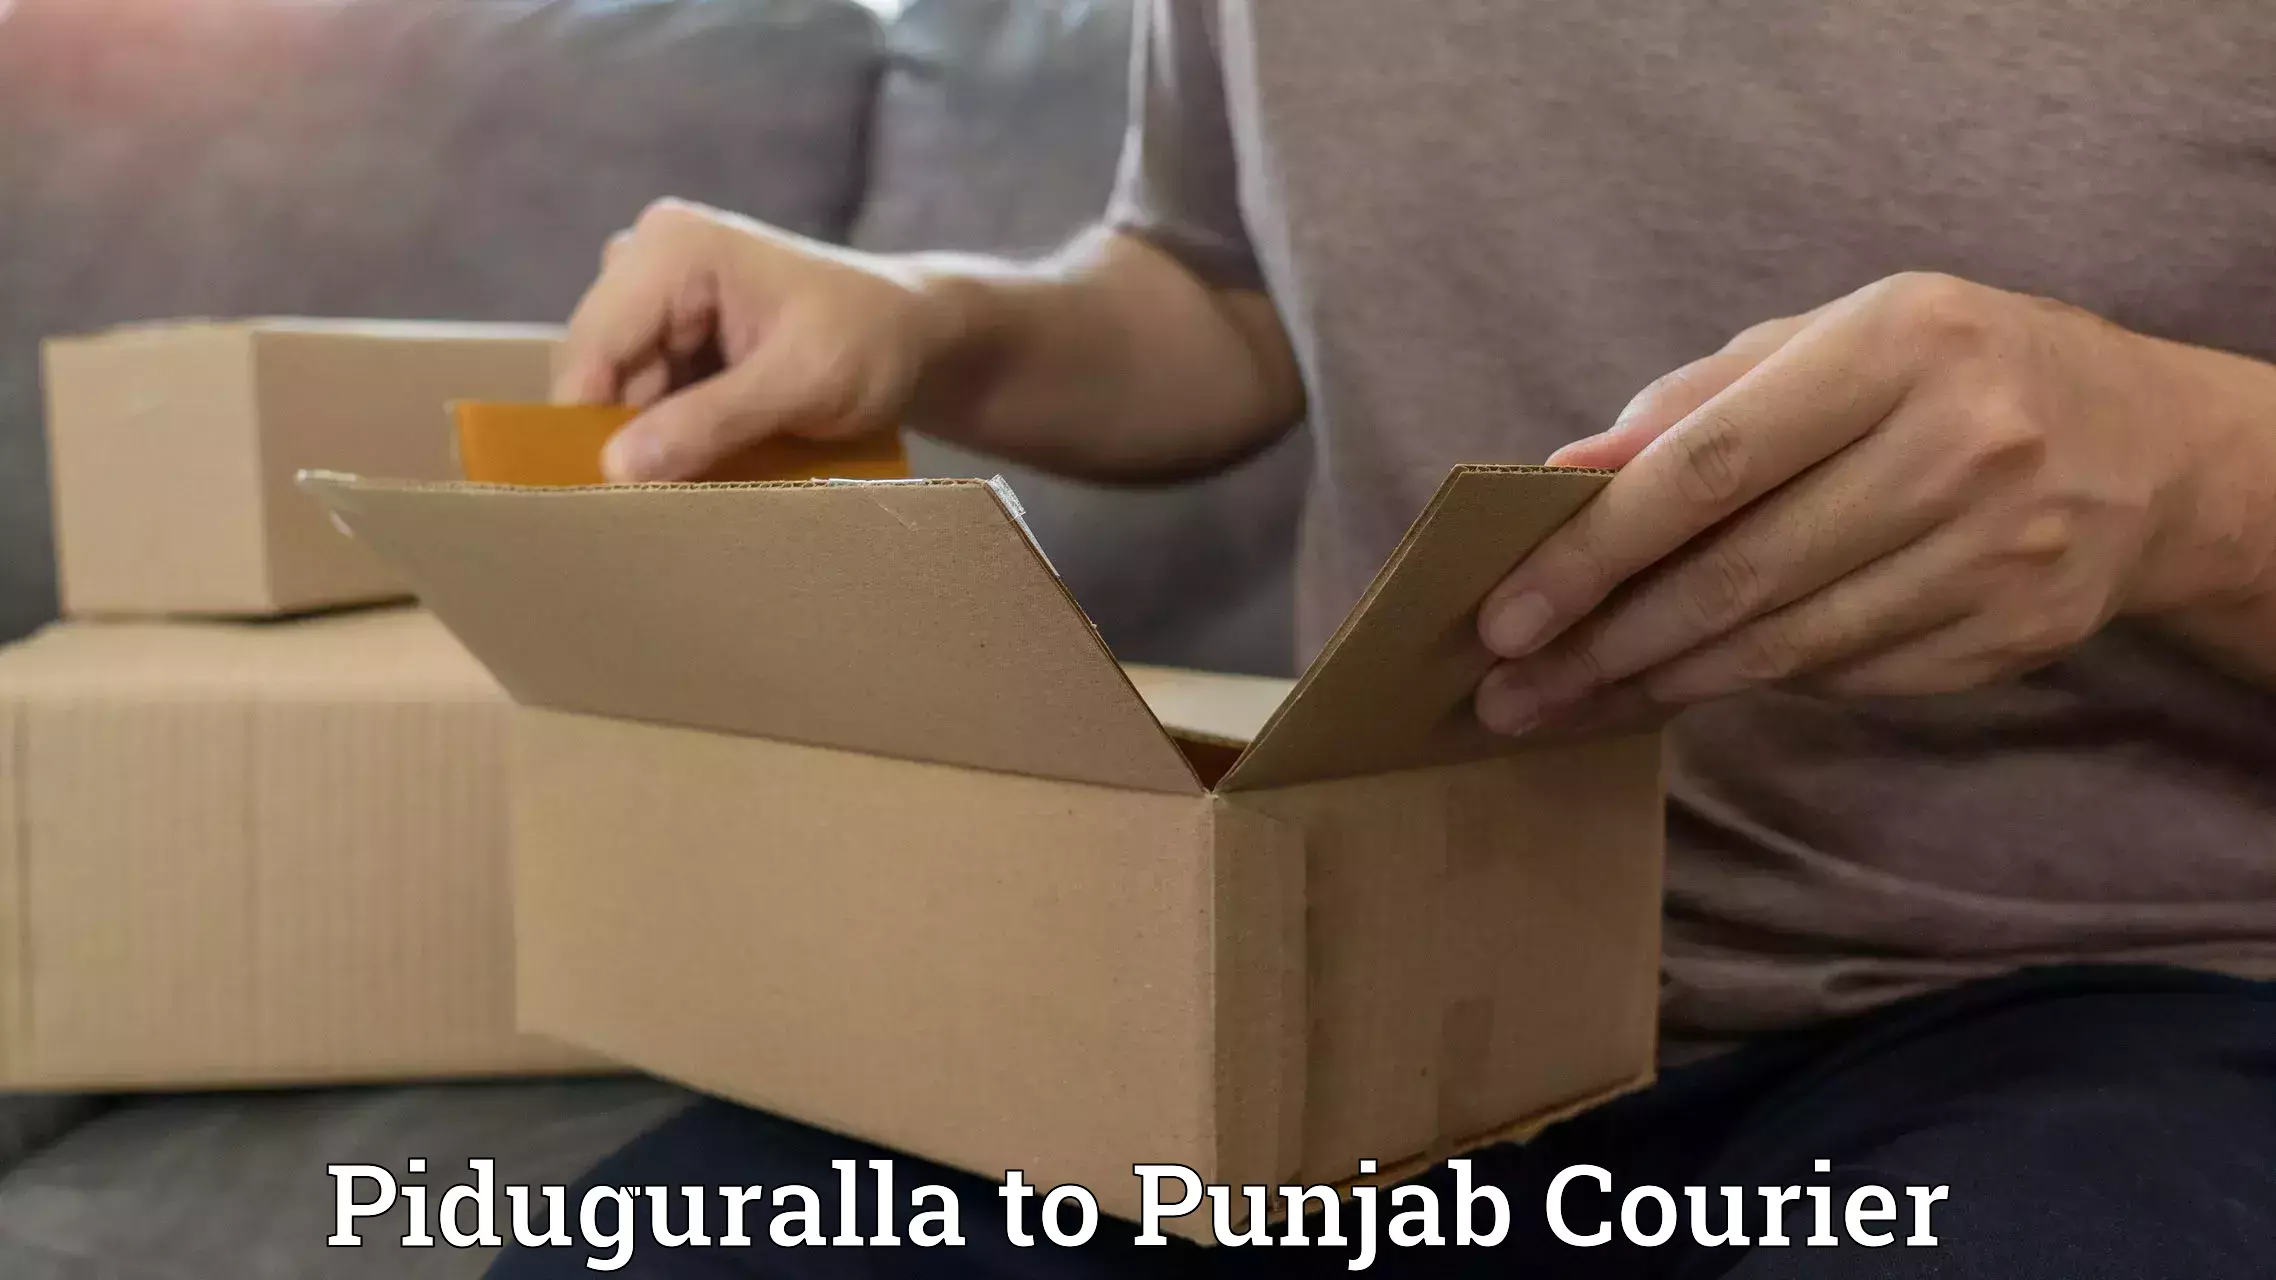 Courier rate comparison Piduguralla to Malout